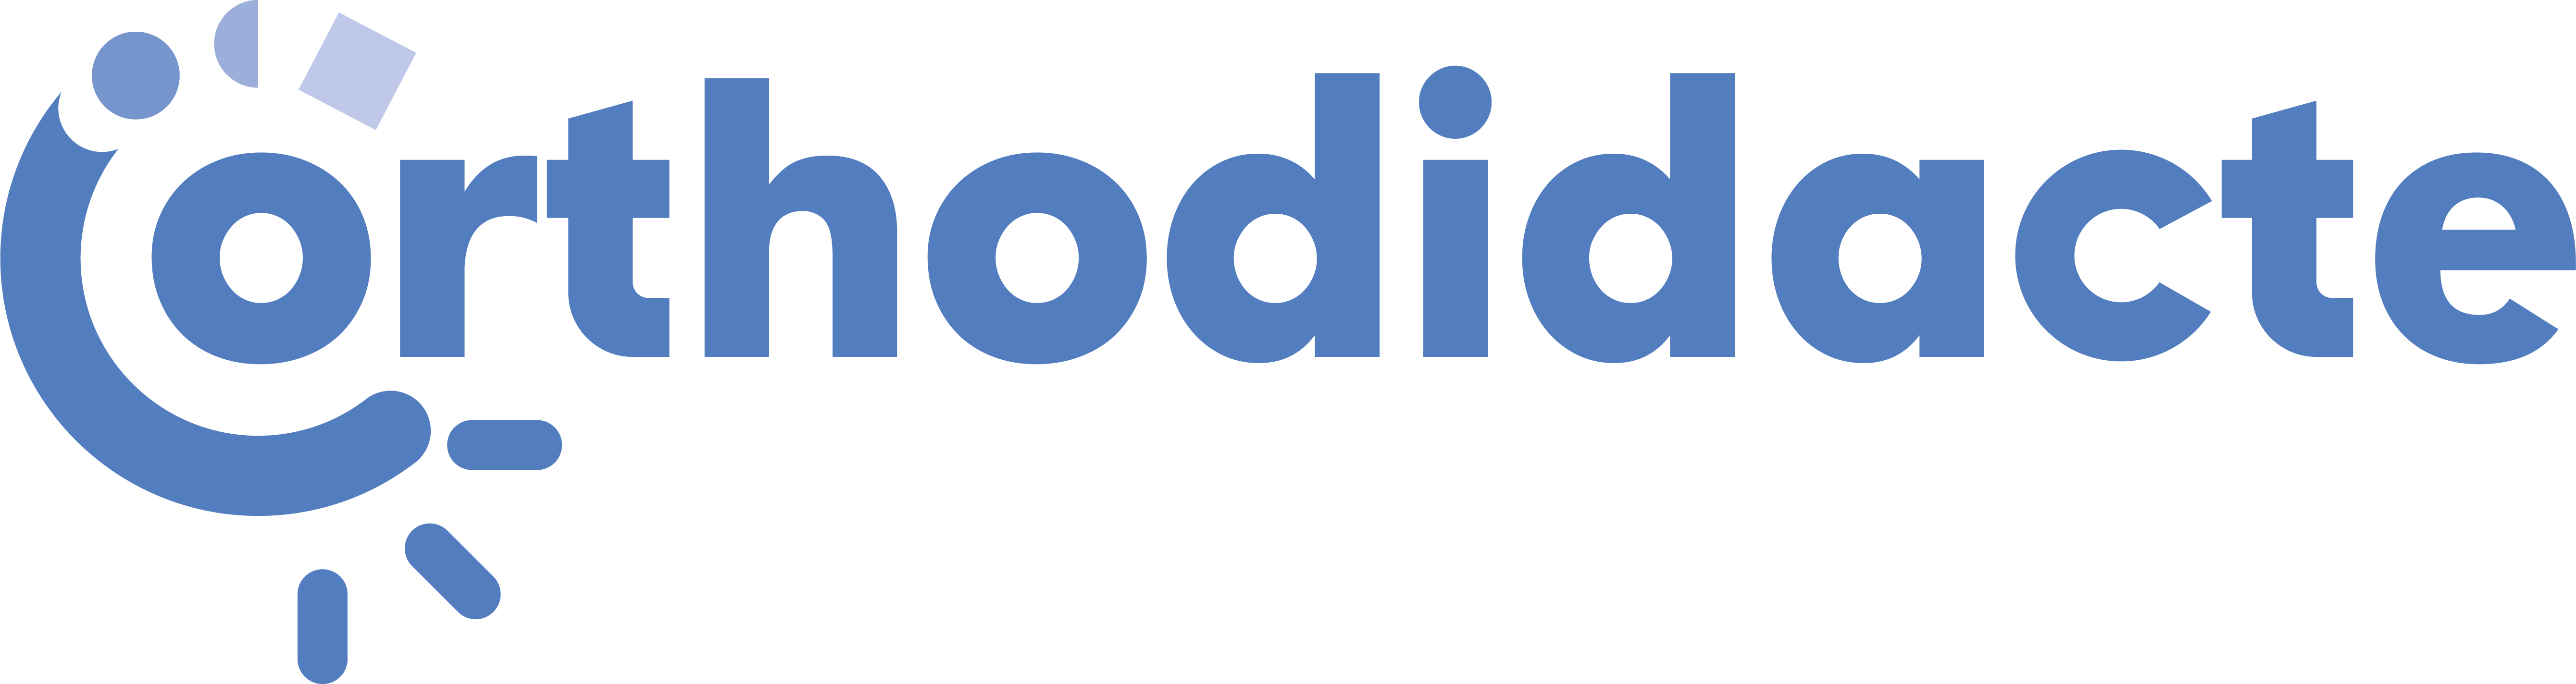 logo-orthodidacte